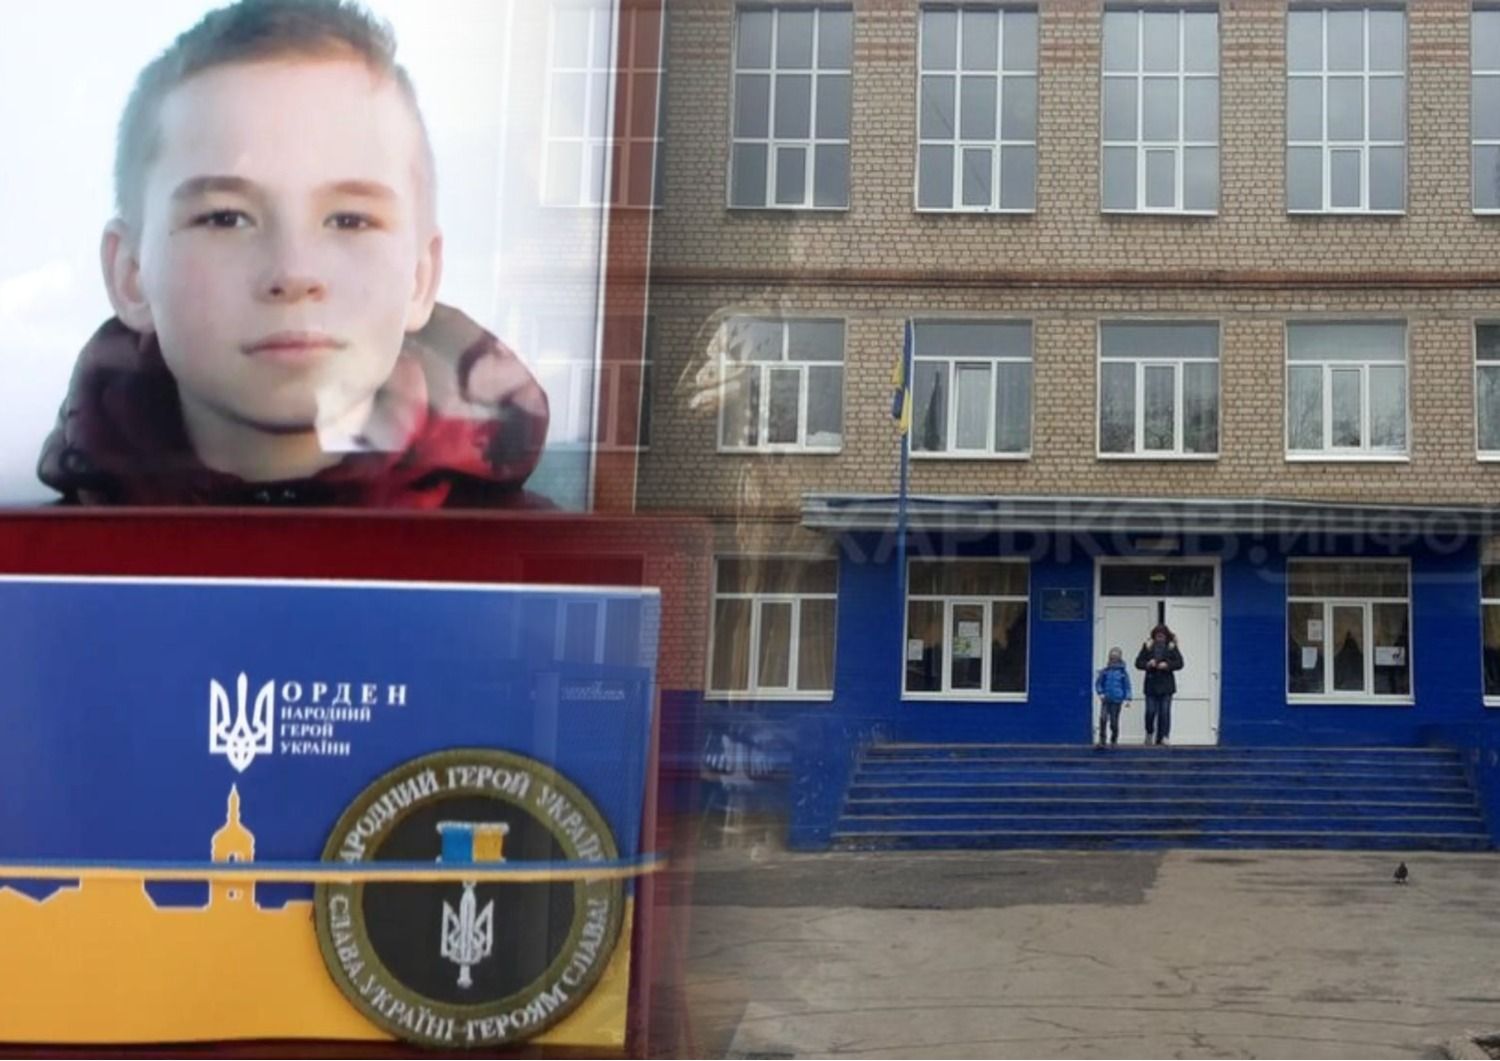 Даня Дідік - чи перейменують школу в Харкові на честь загиблого під час теракту учня - Освіта